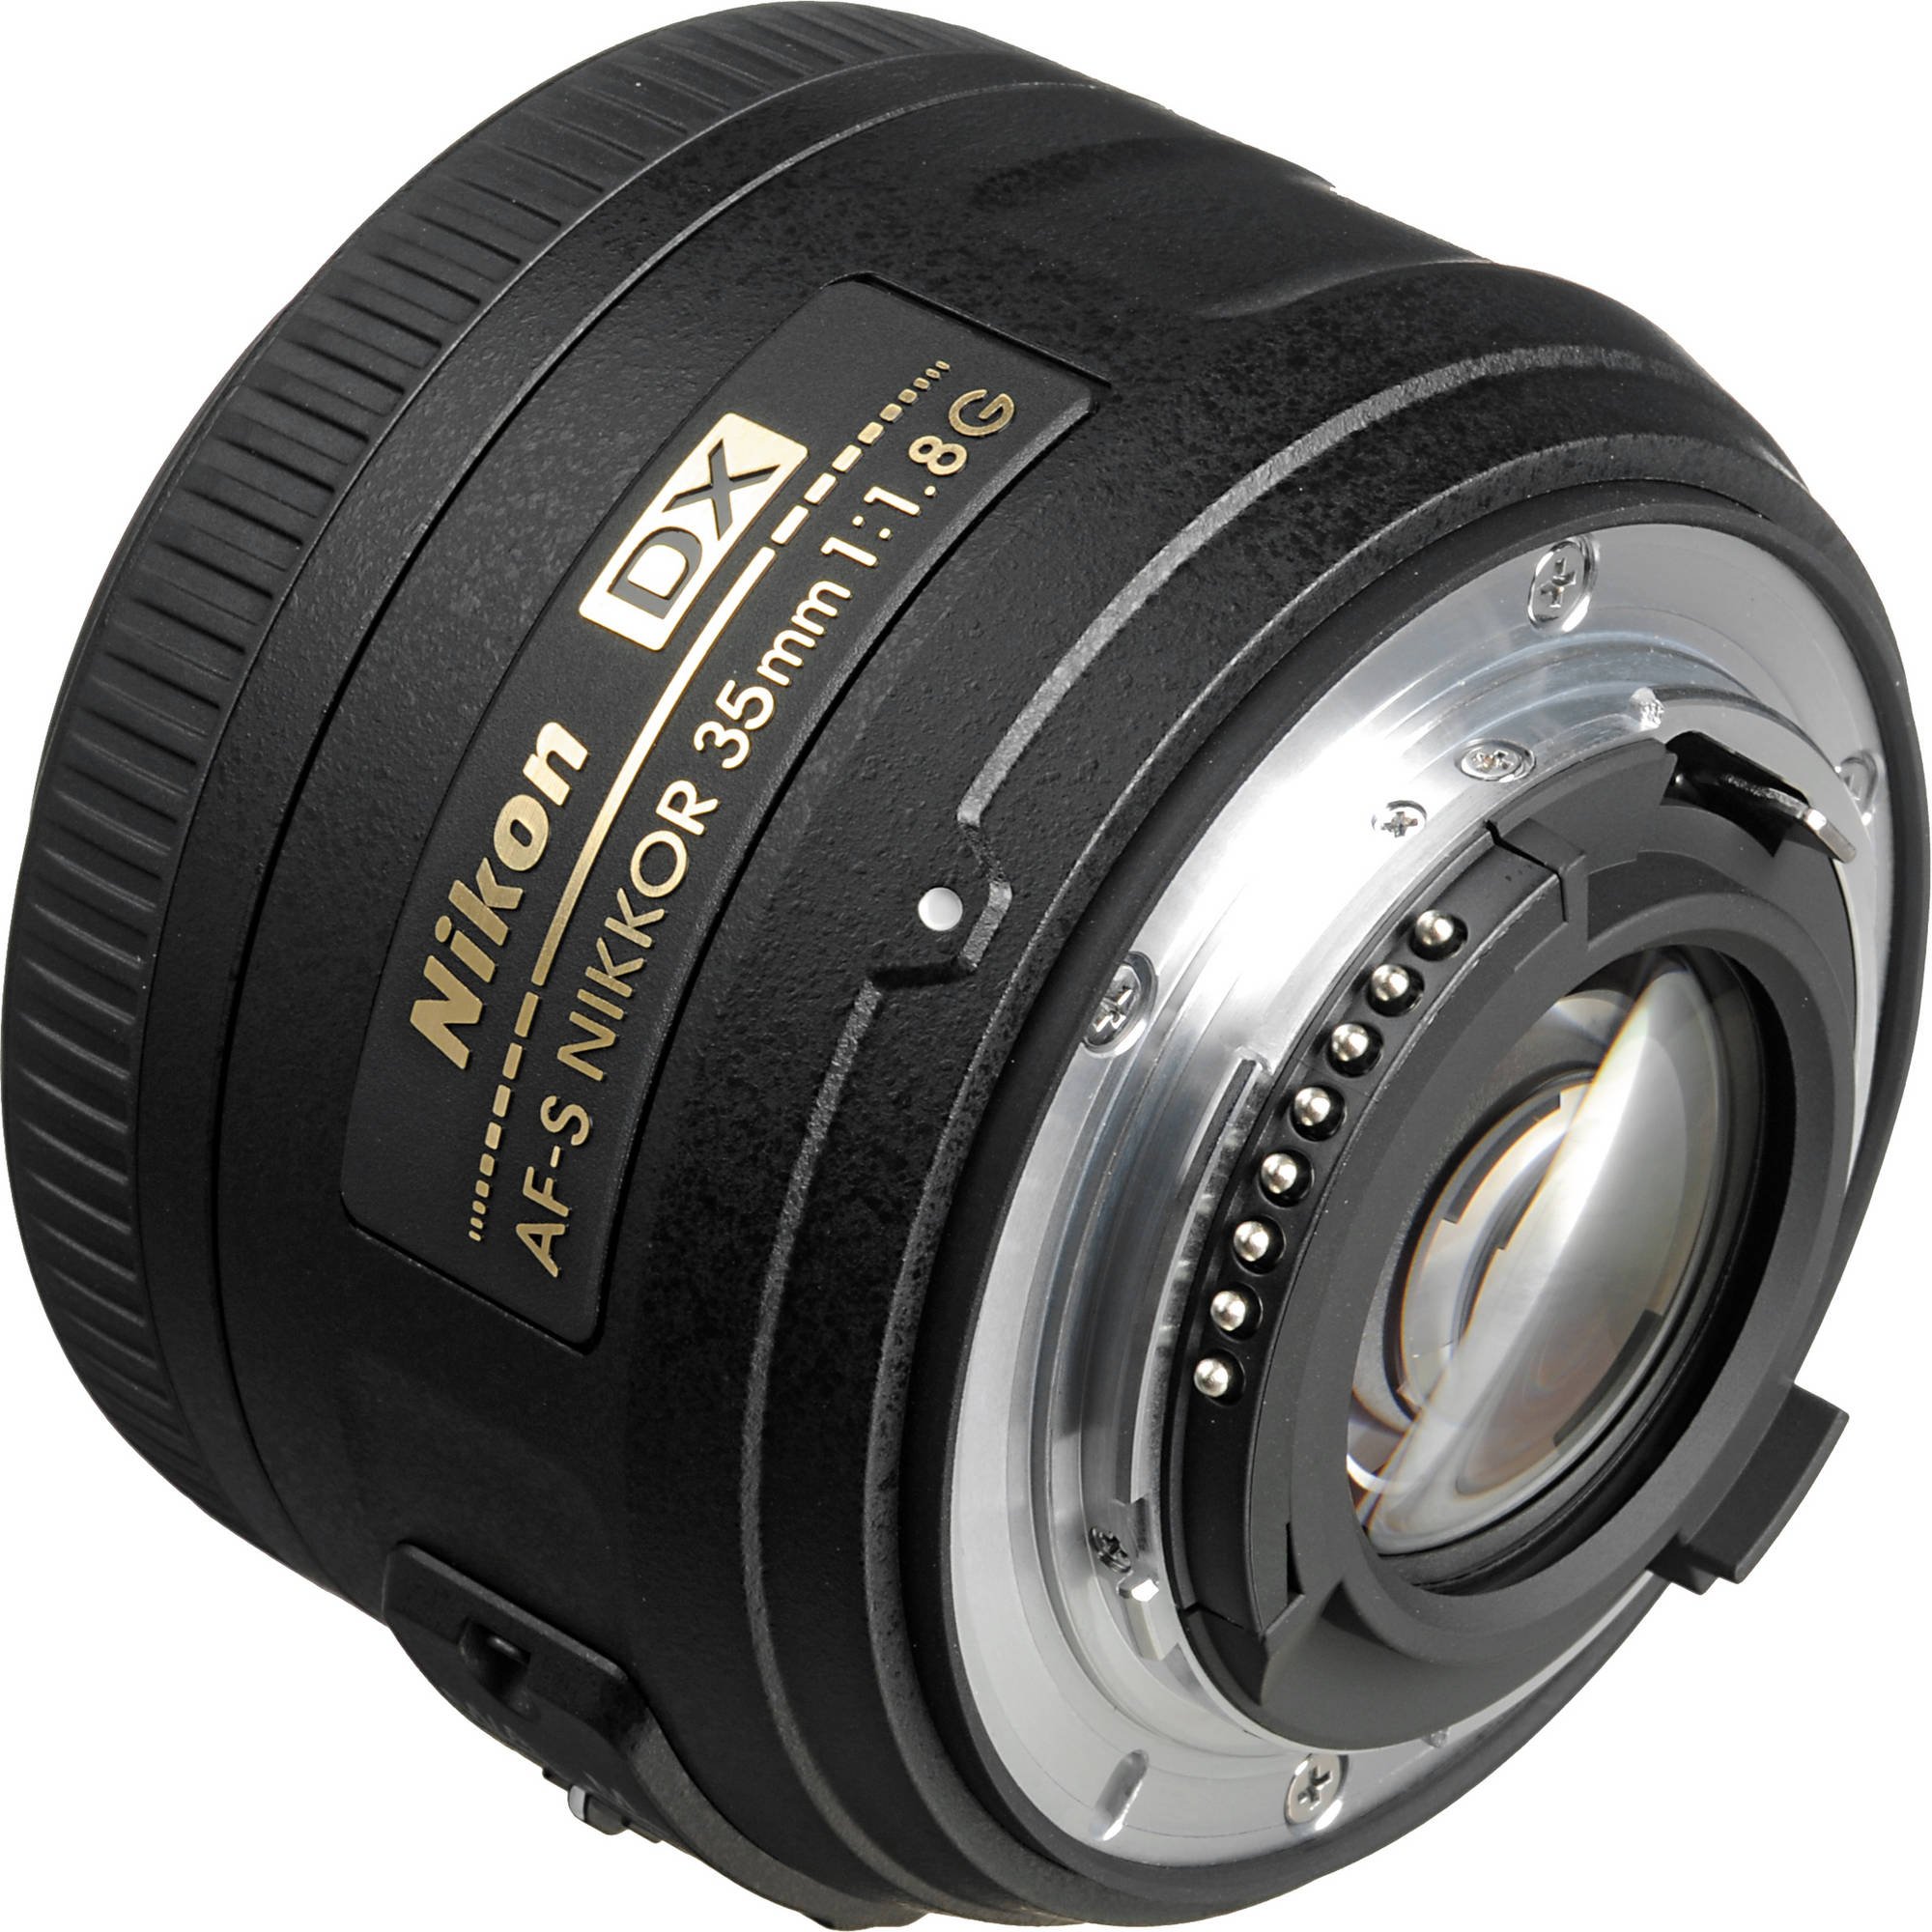 Nikon AF-S DX NIKKOR 35mm f/1.8G Lens with Auto Focus for Nikon DSLR Cameras, 2183, Black